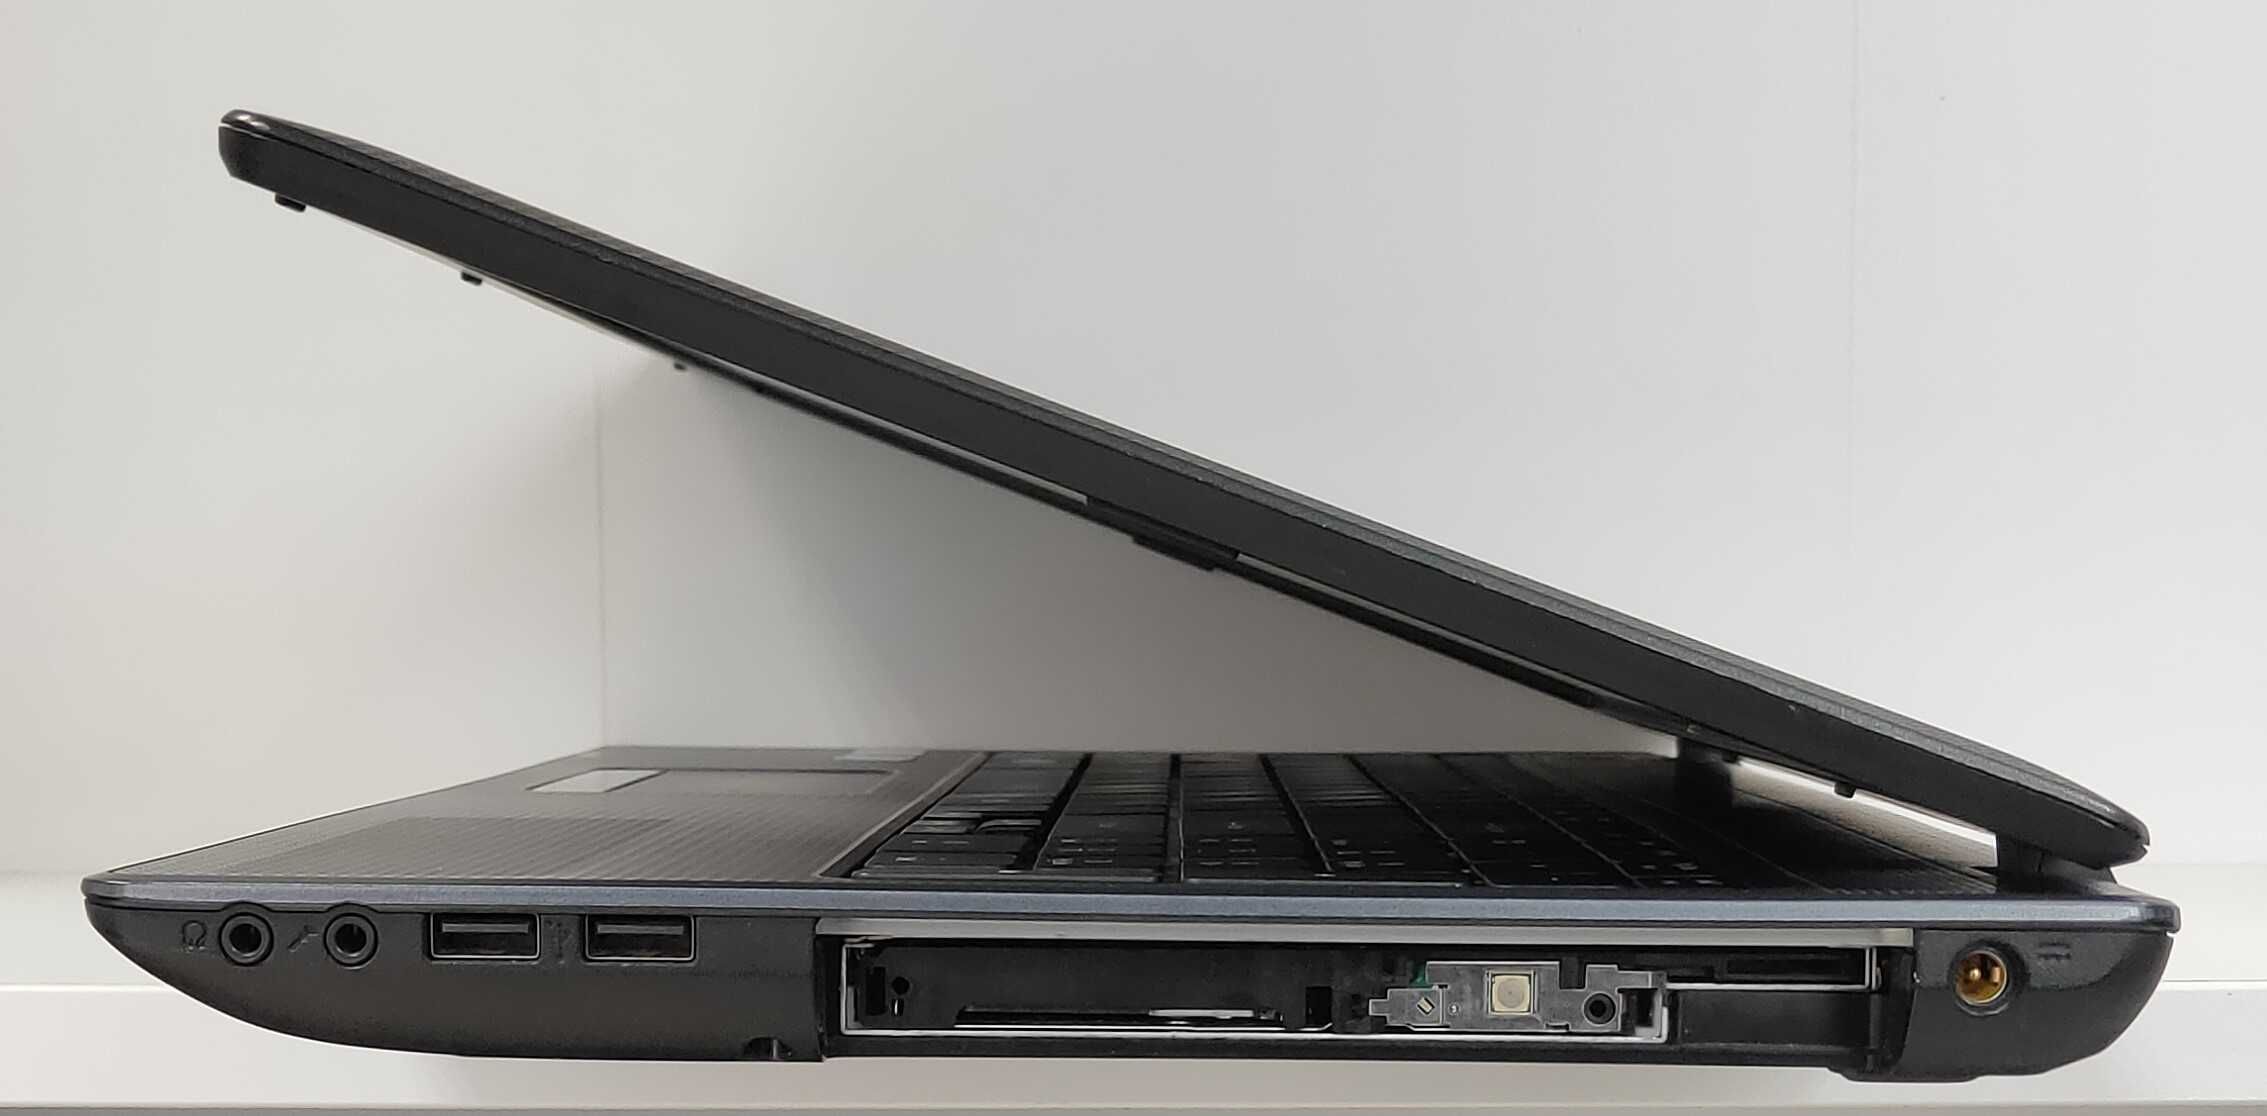 Laptop Acer 5744 Intel i3-370M 4GB 15.6" 160GB Win7 IntelHD Gwarancja